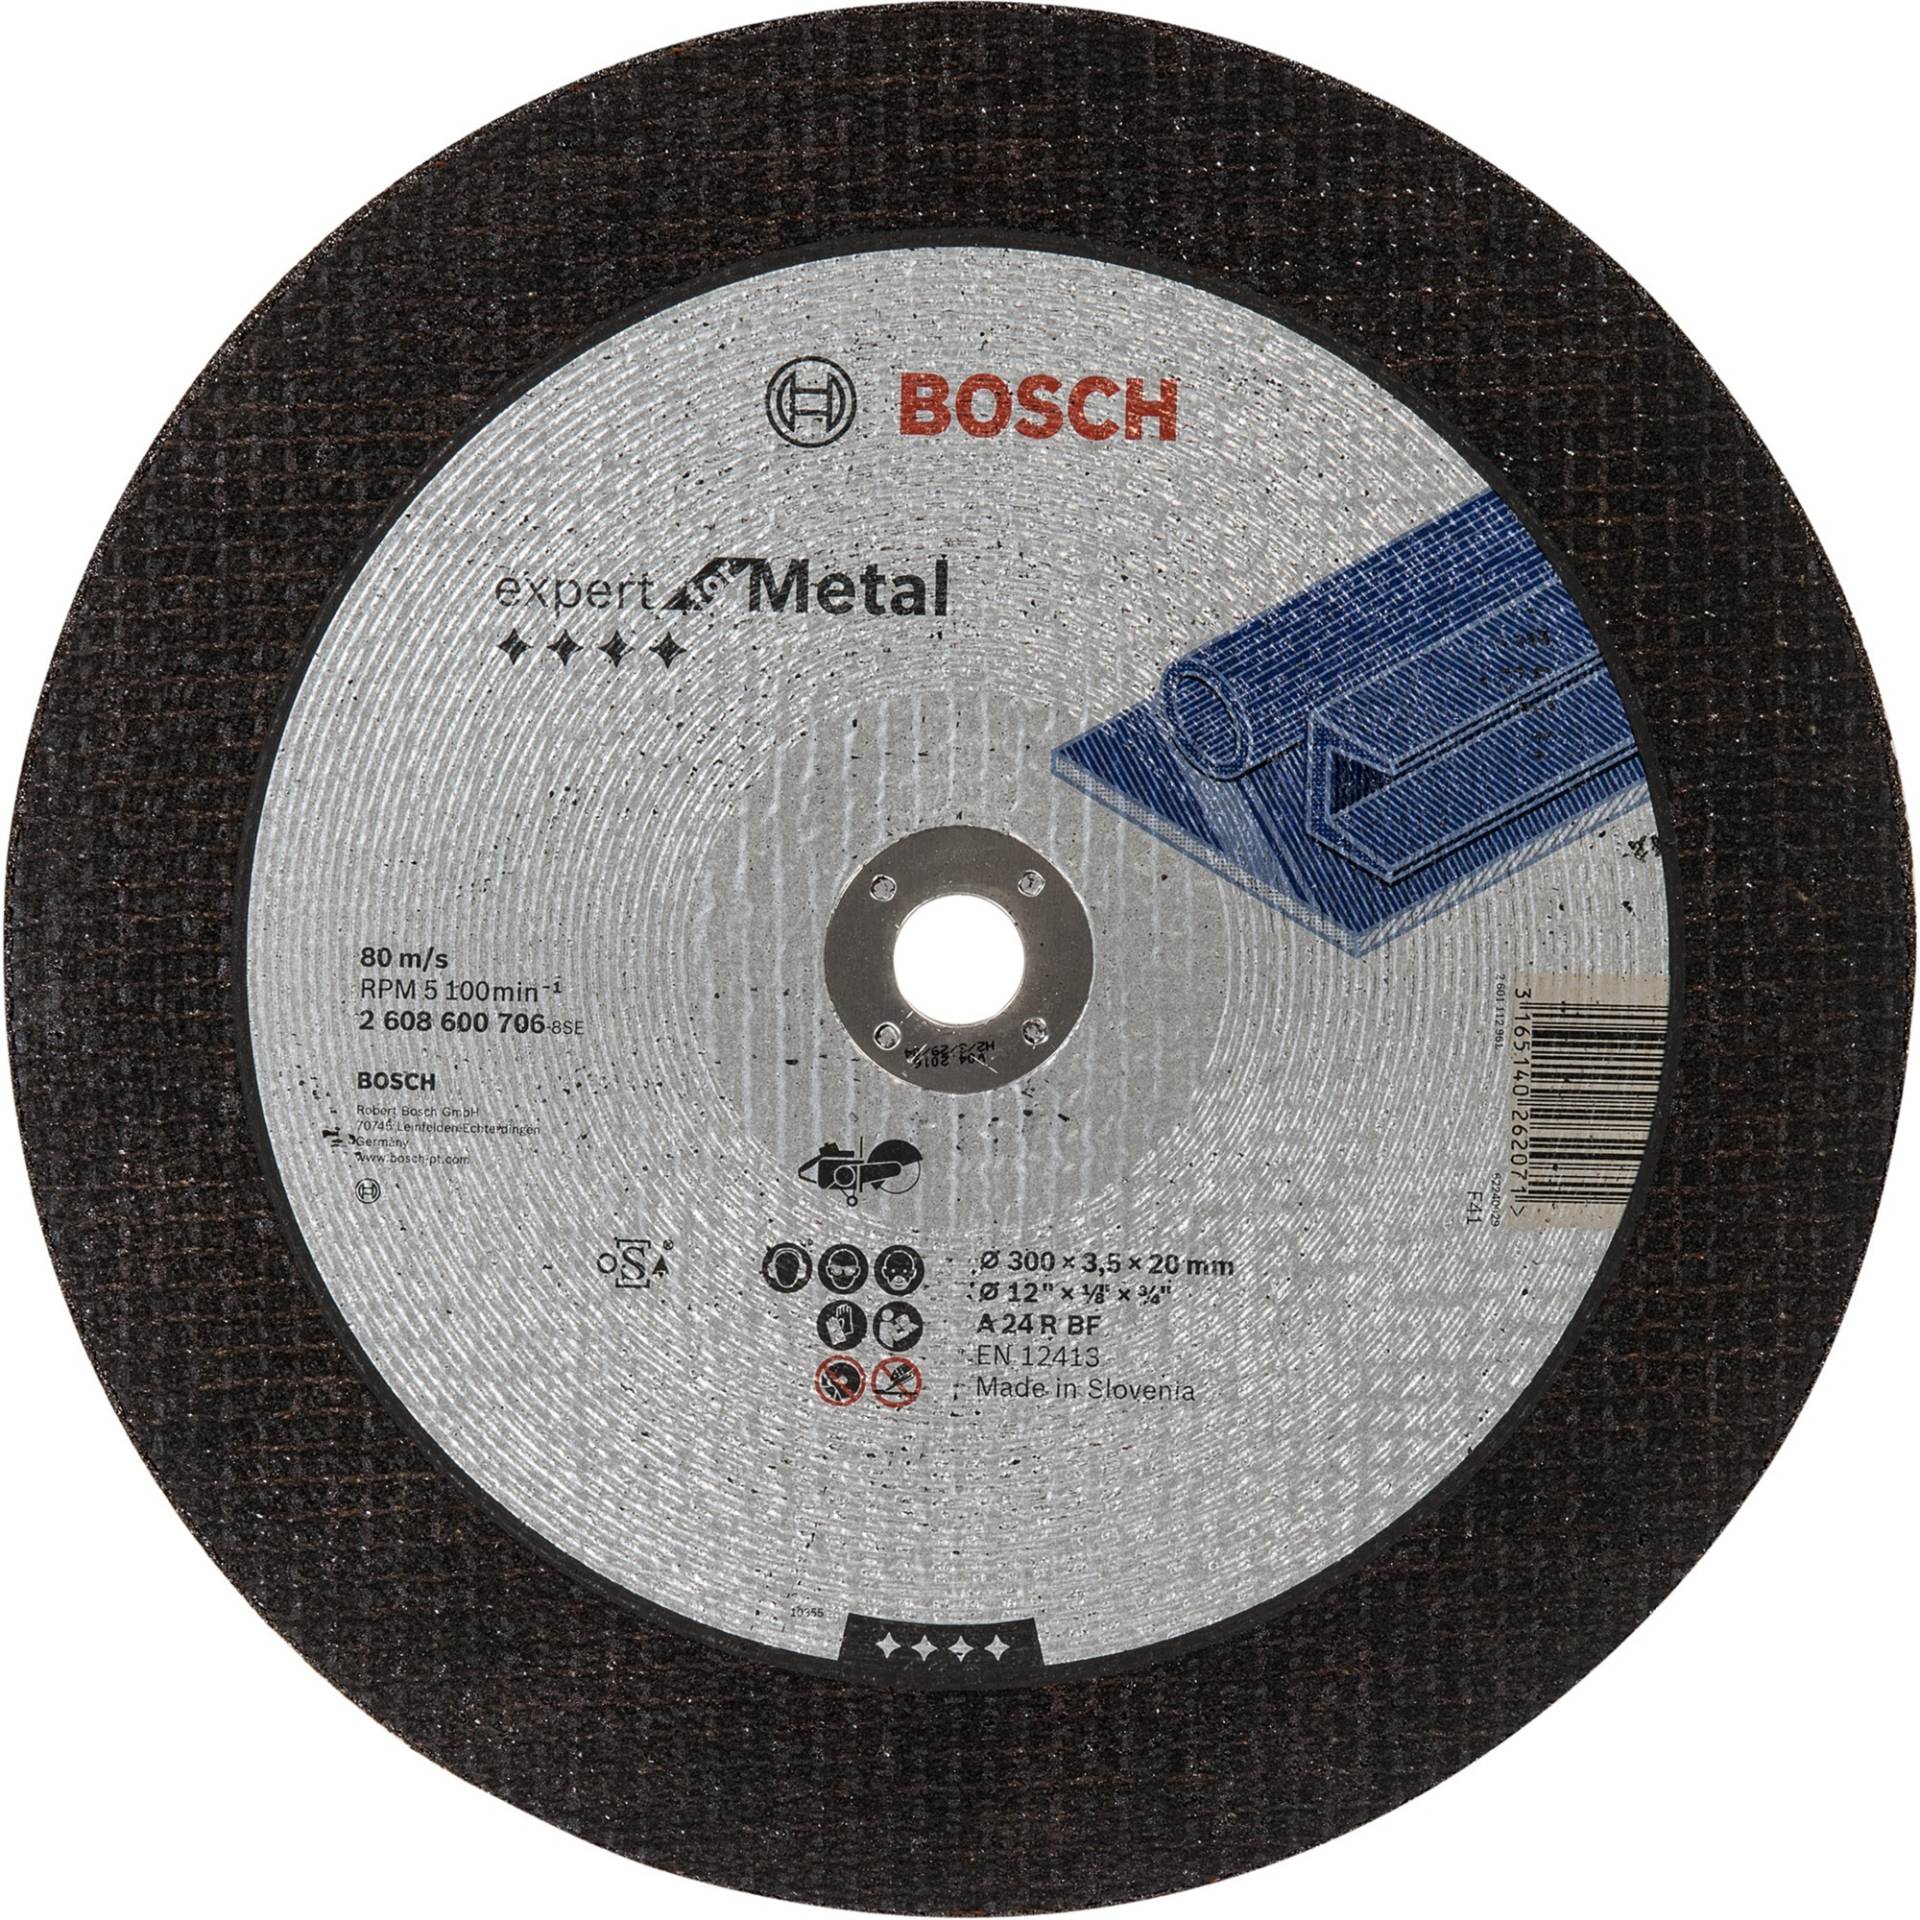 Trennscheibe Expert for Metal, Ø 300mm von Bosch